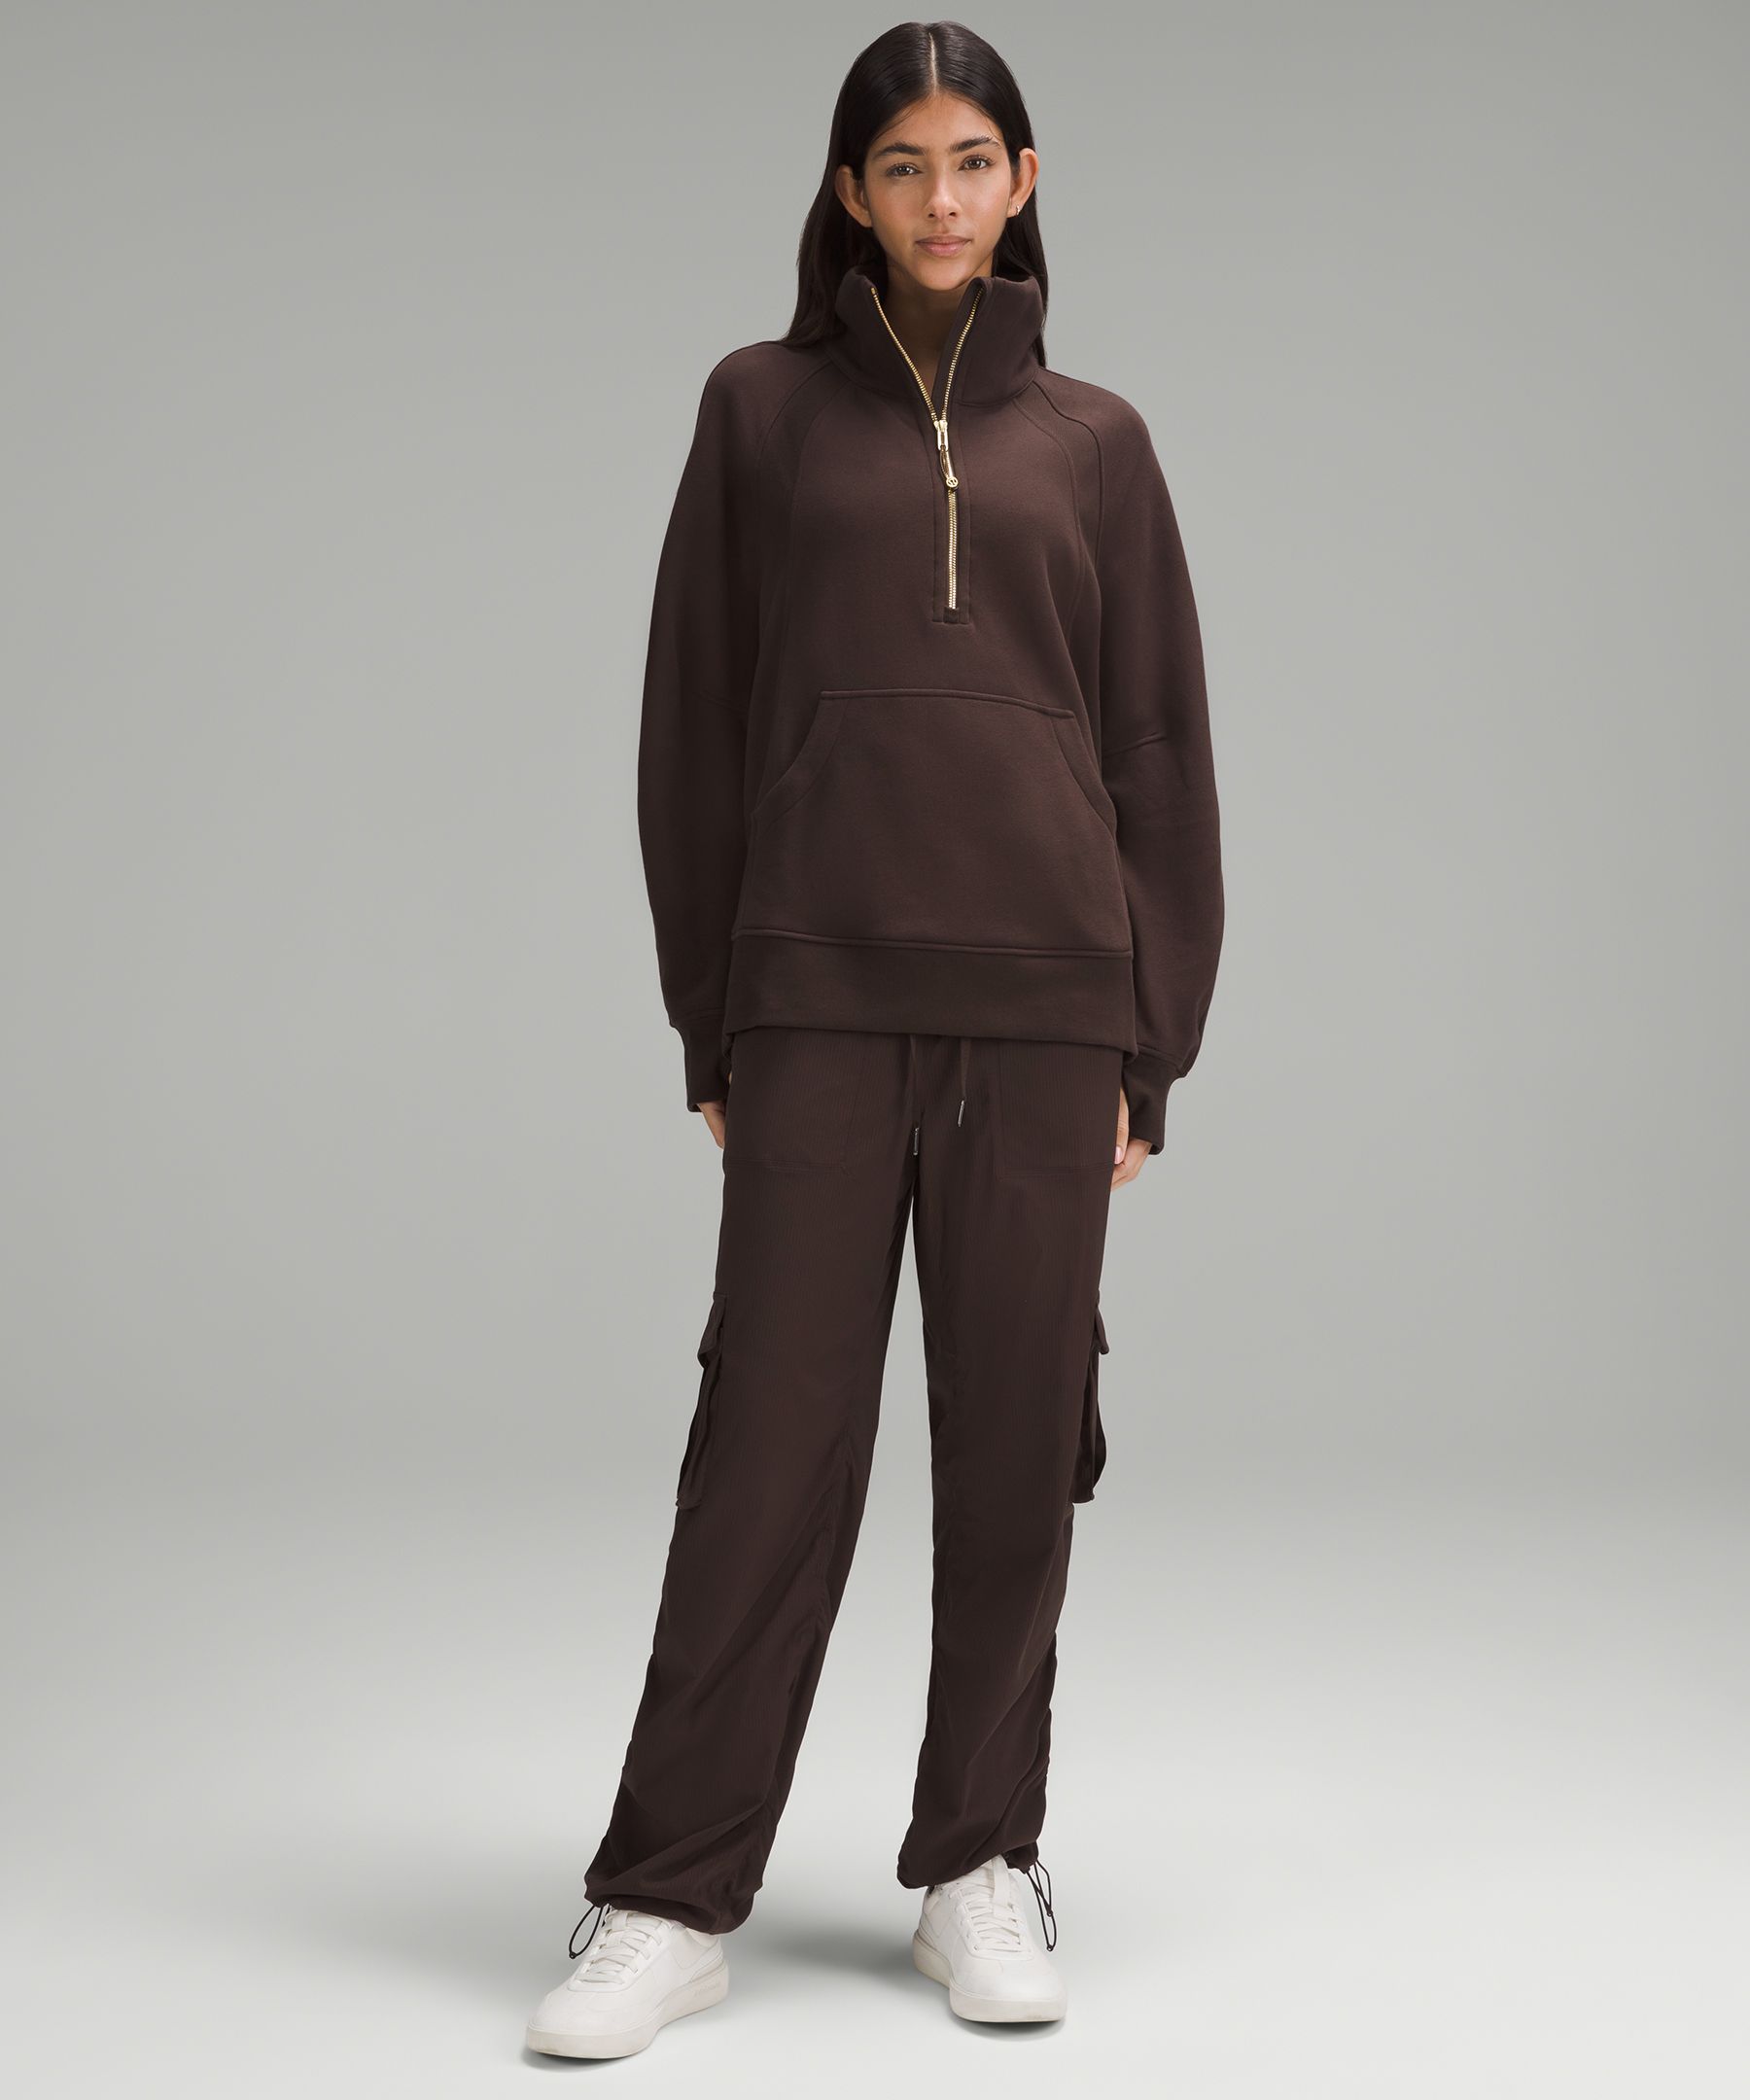 Scuba Oversized Funnel-Neck Half Zip *Long, Women's Hoodies & Sweatshirts